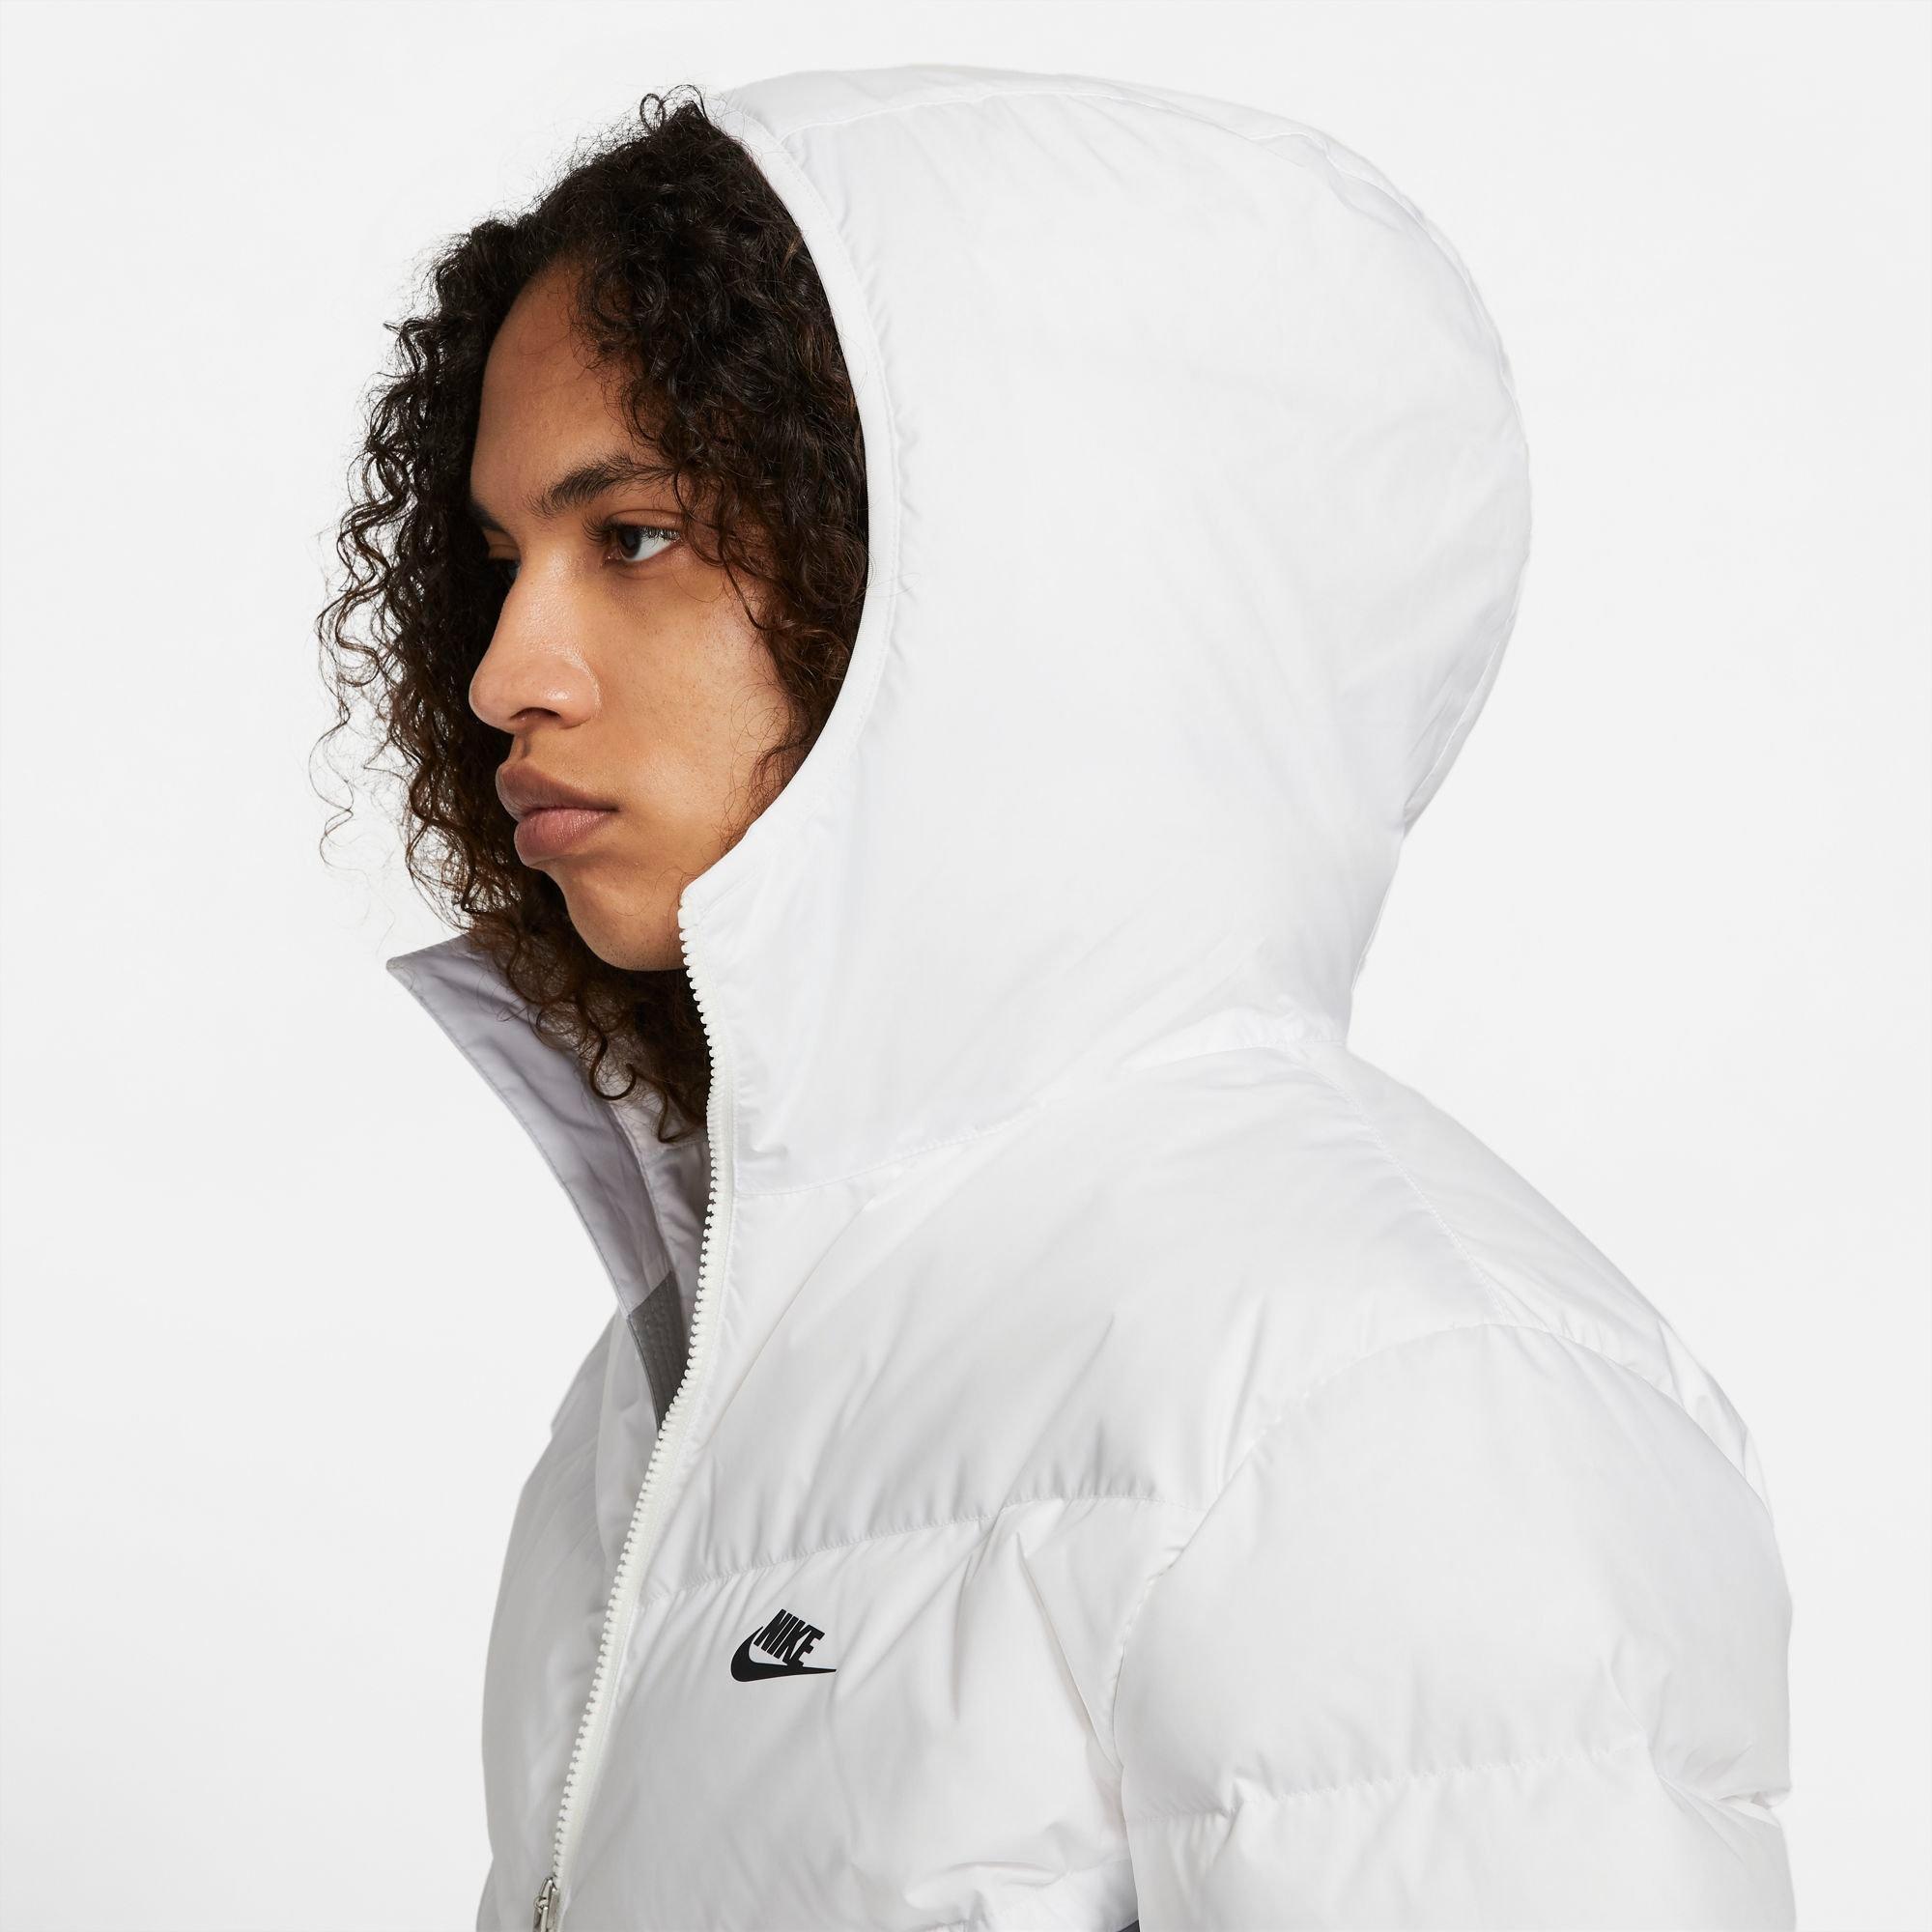 Nike Men's Sportswear Storm-FIT Windrunner Hooded Jacket - White/Grey